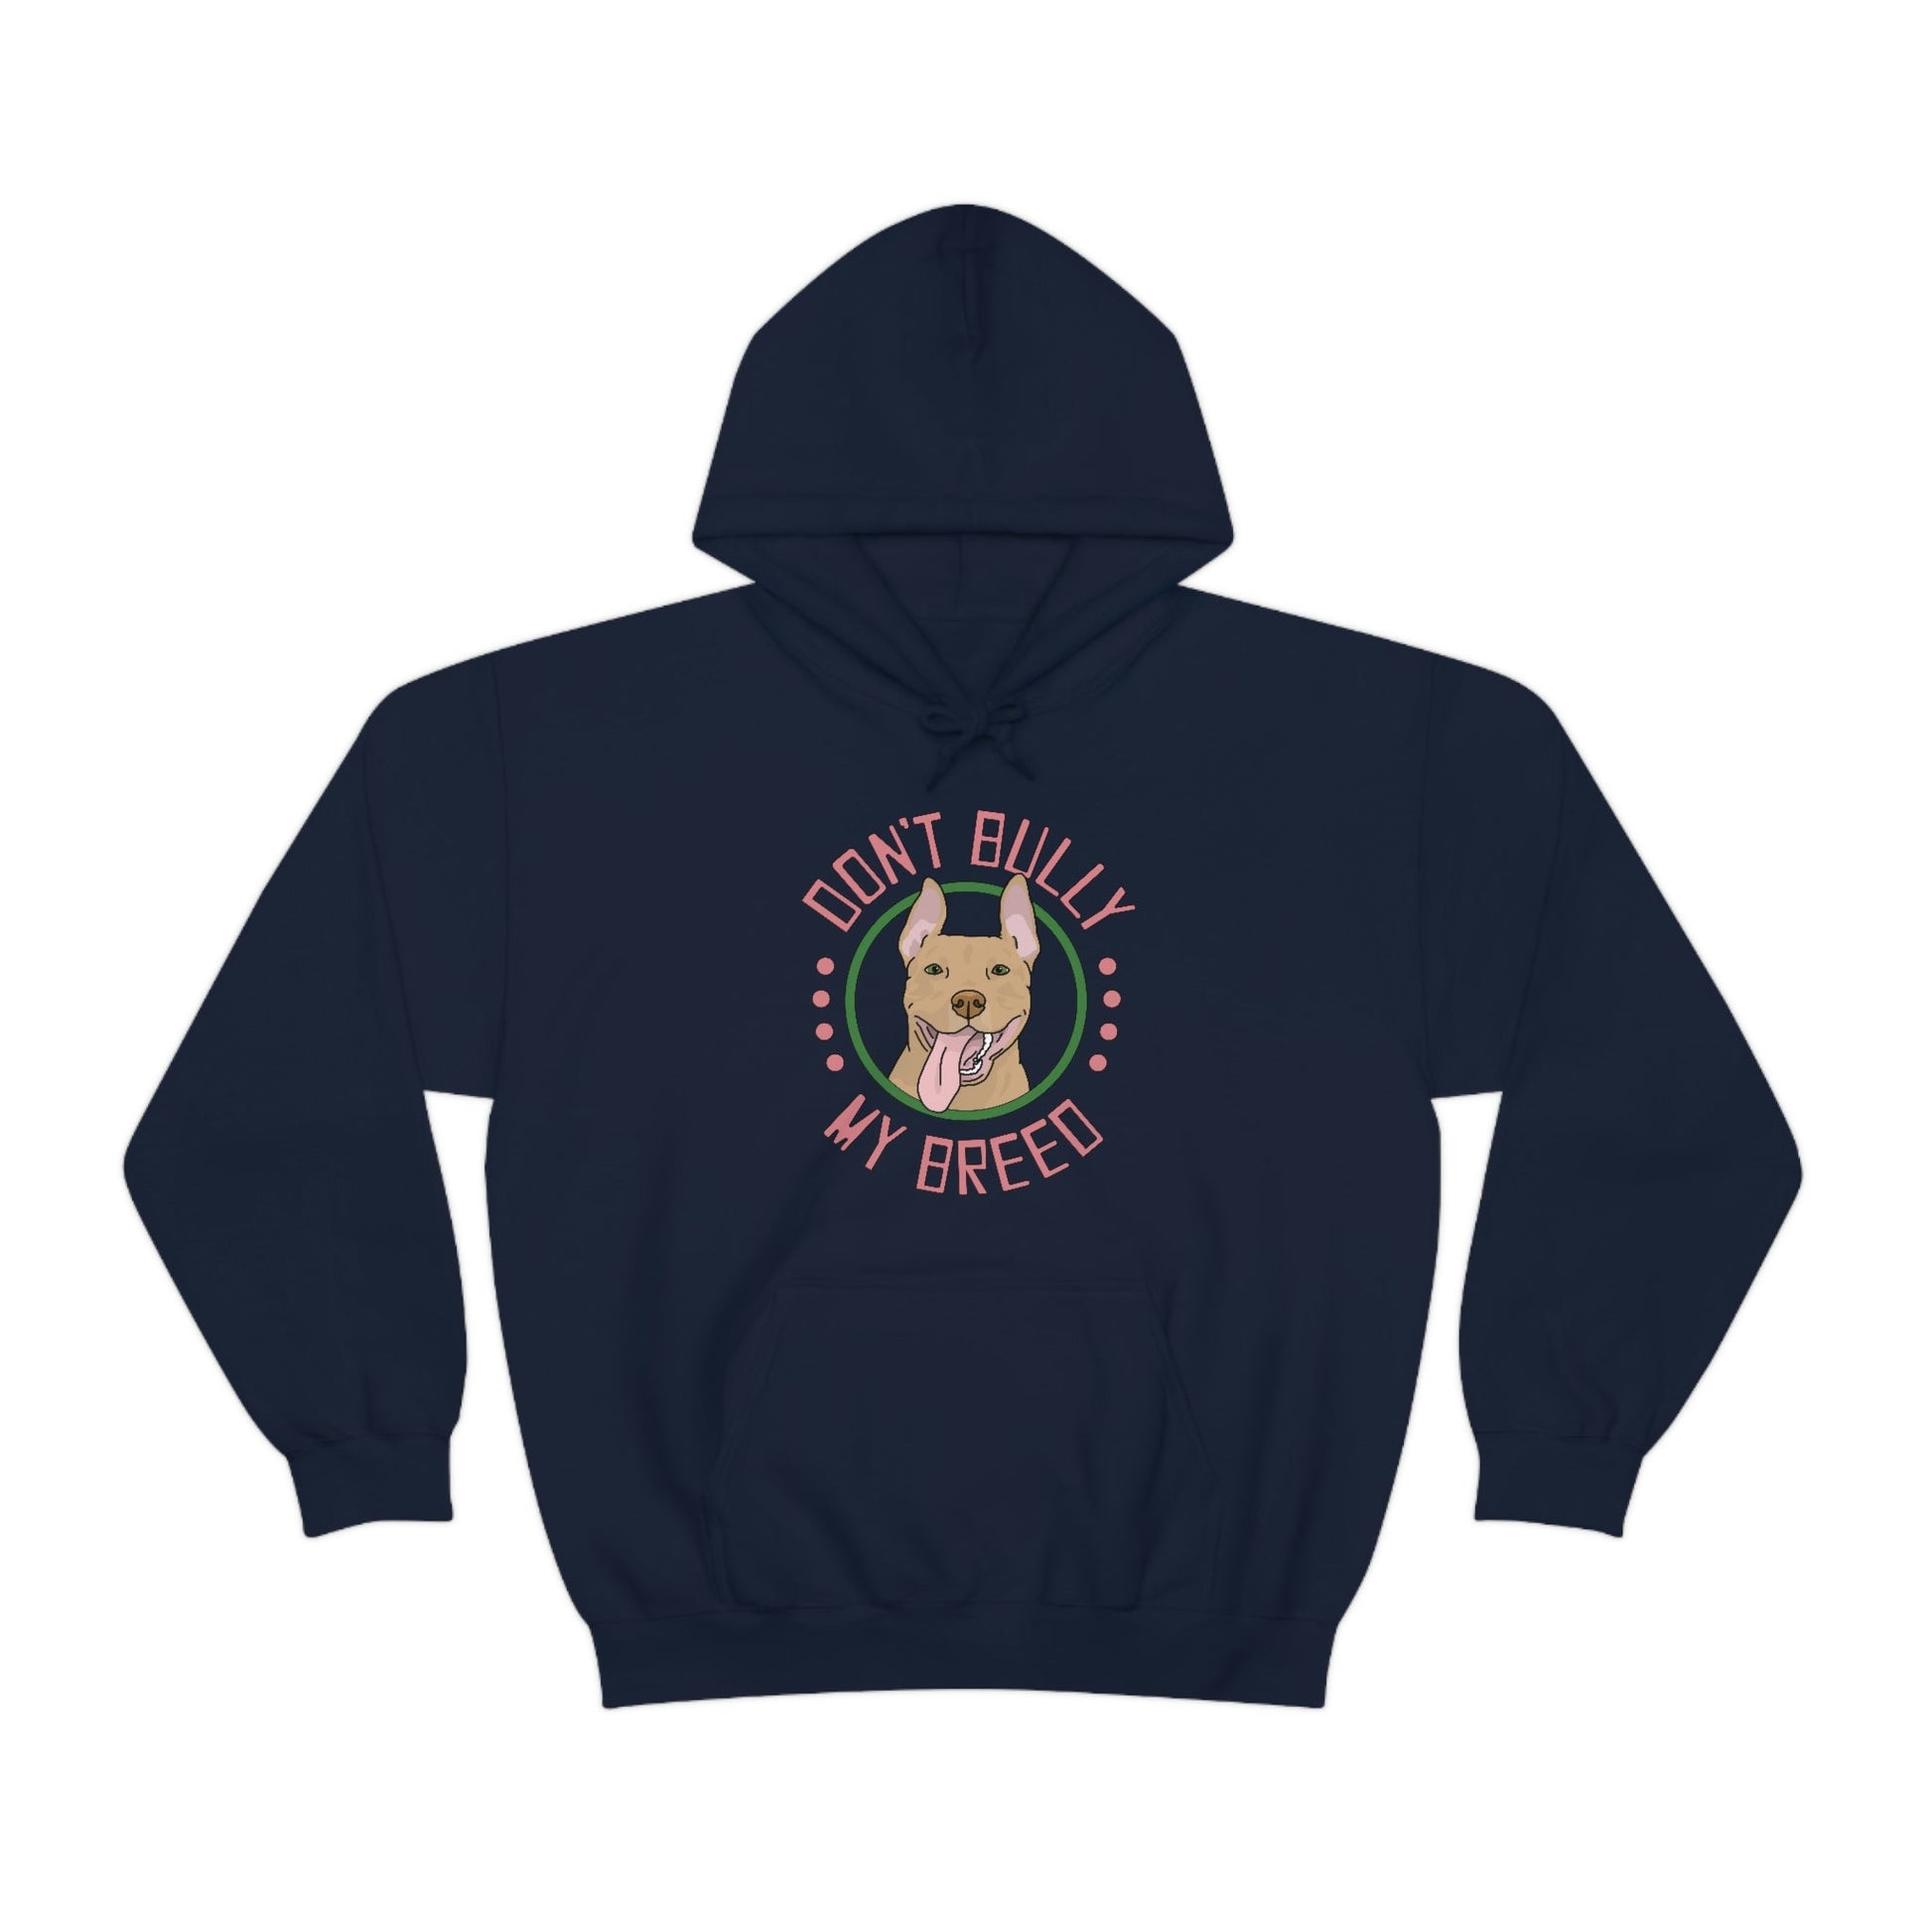 Don't Bully My Breed - Bunny Ears | Hooded Sweatshirt - Detezi Designs-59684462707519435174